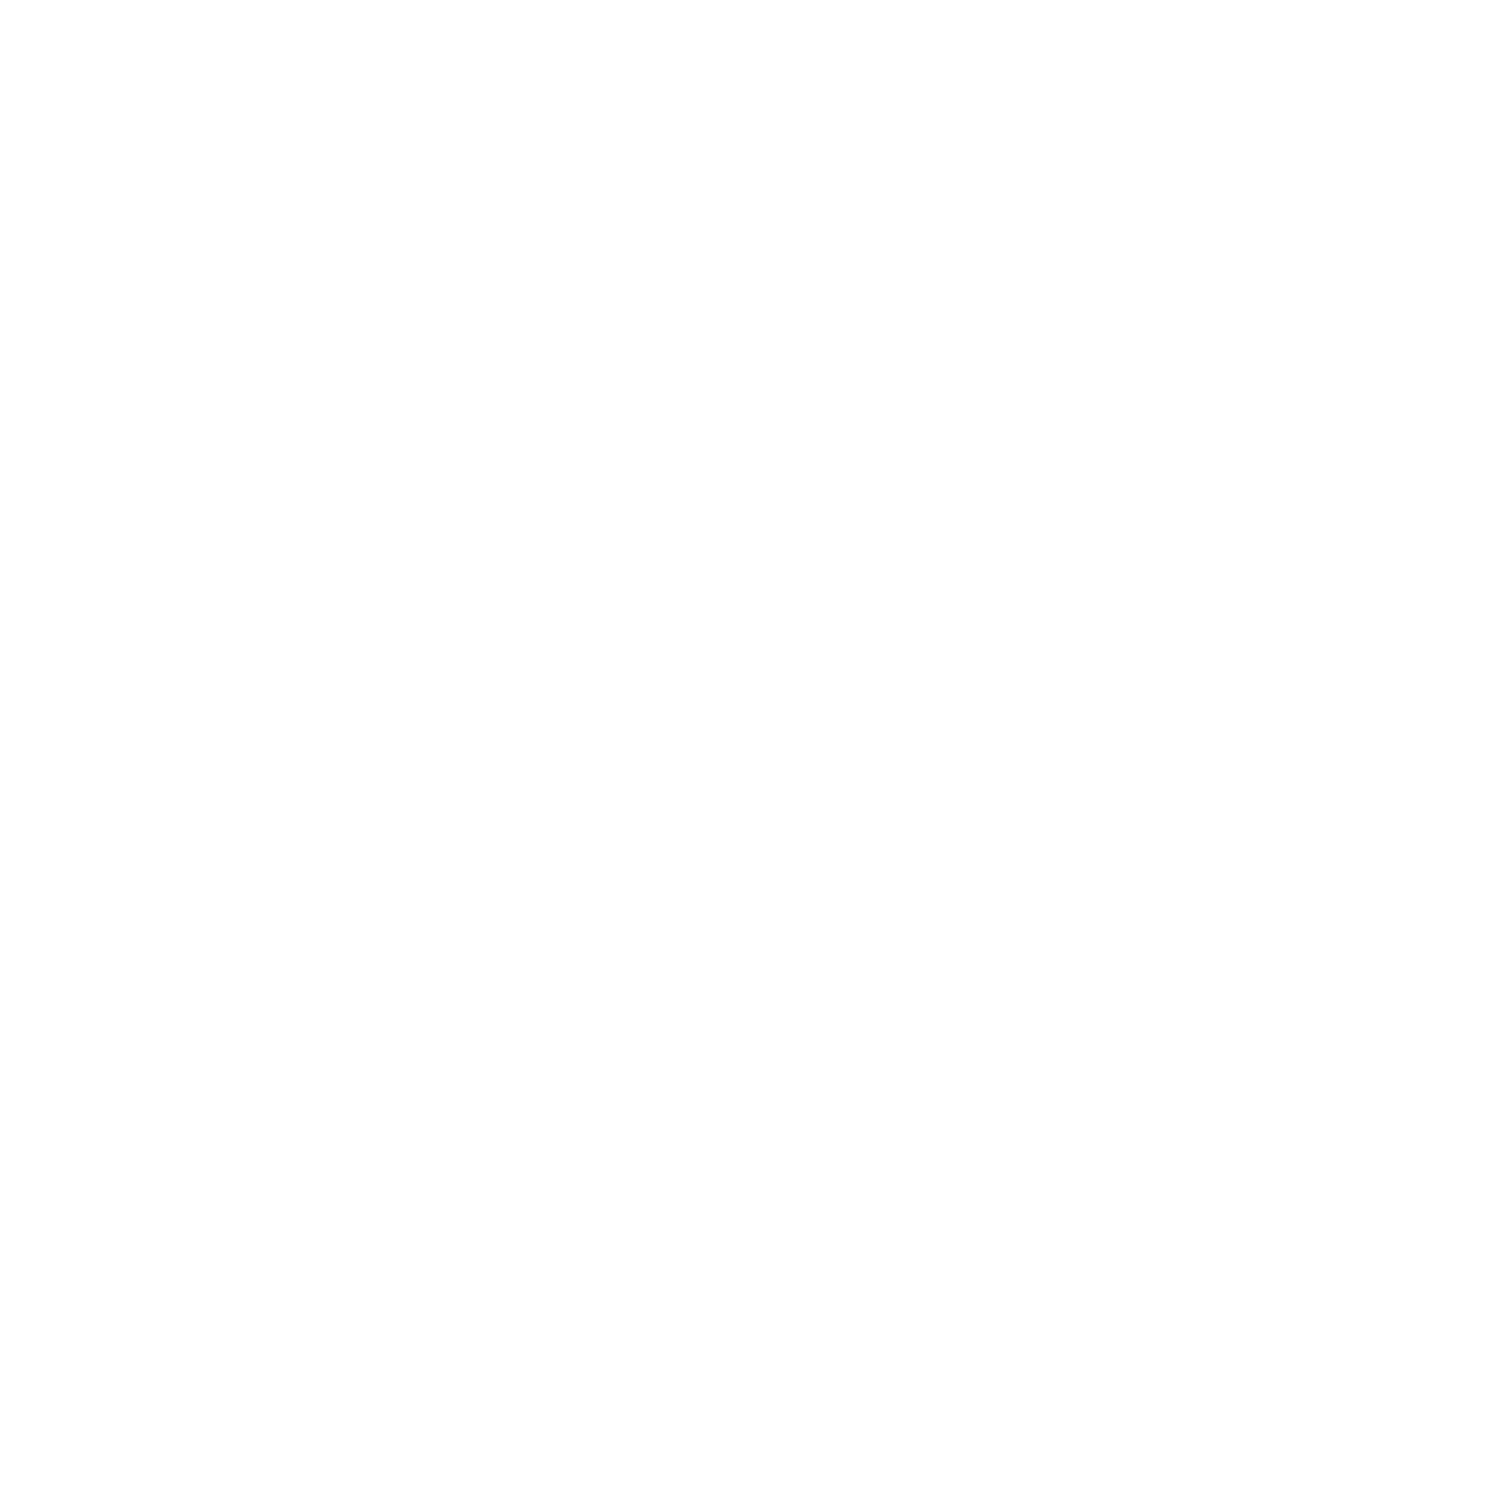 The Suicide Doors